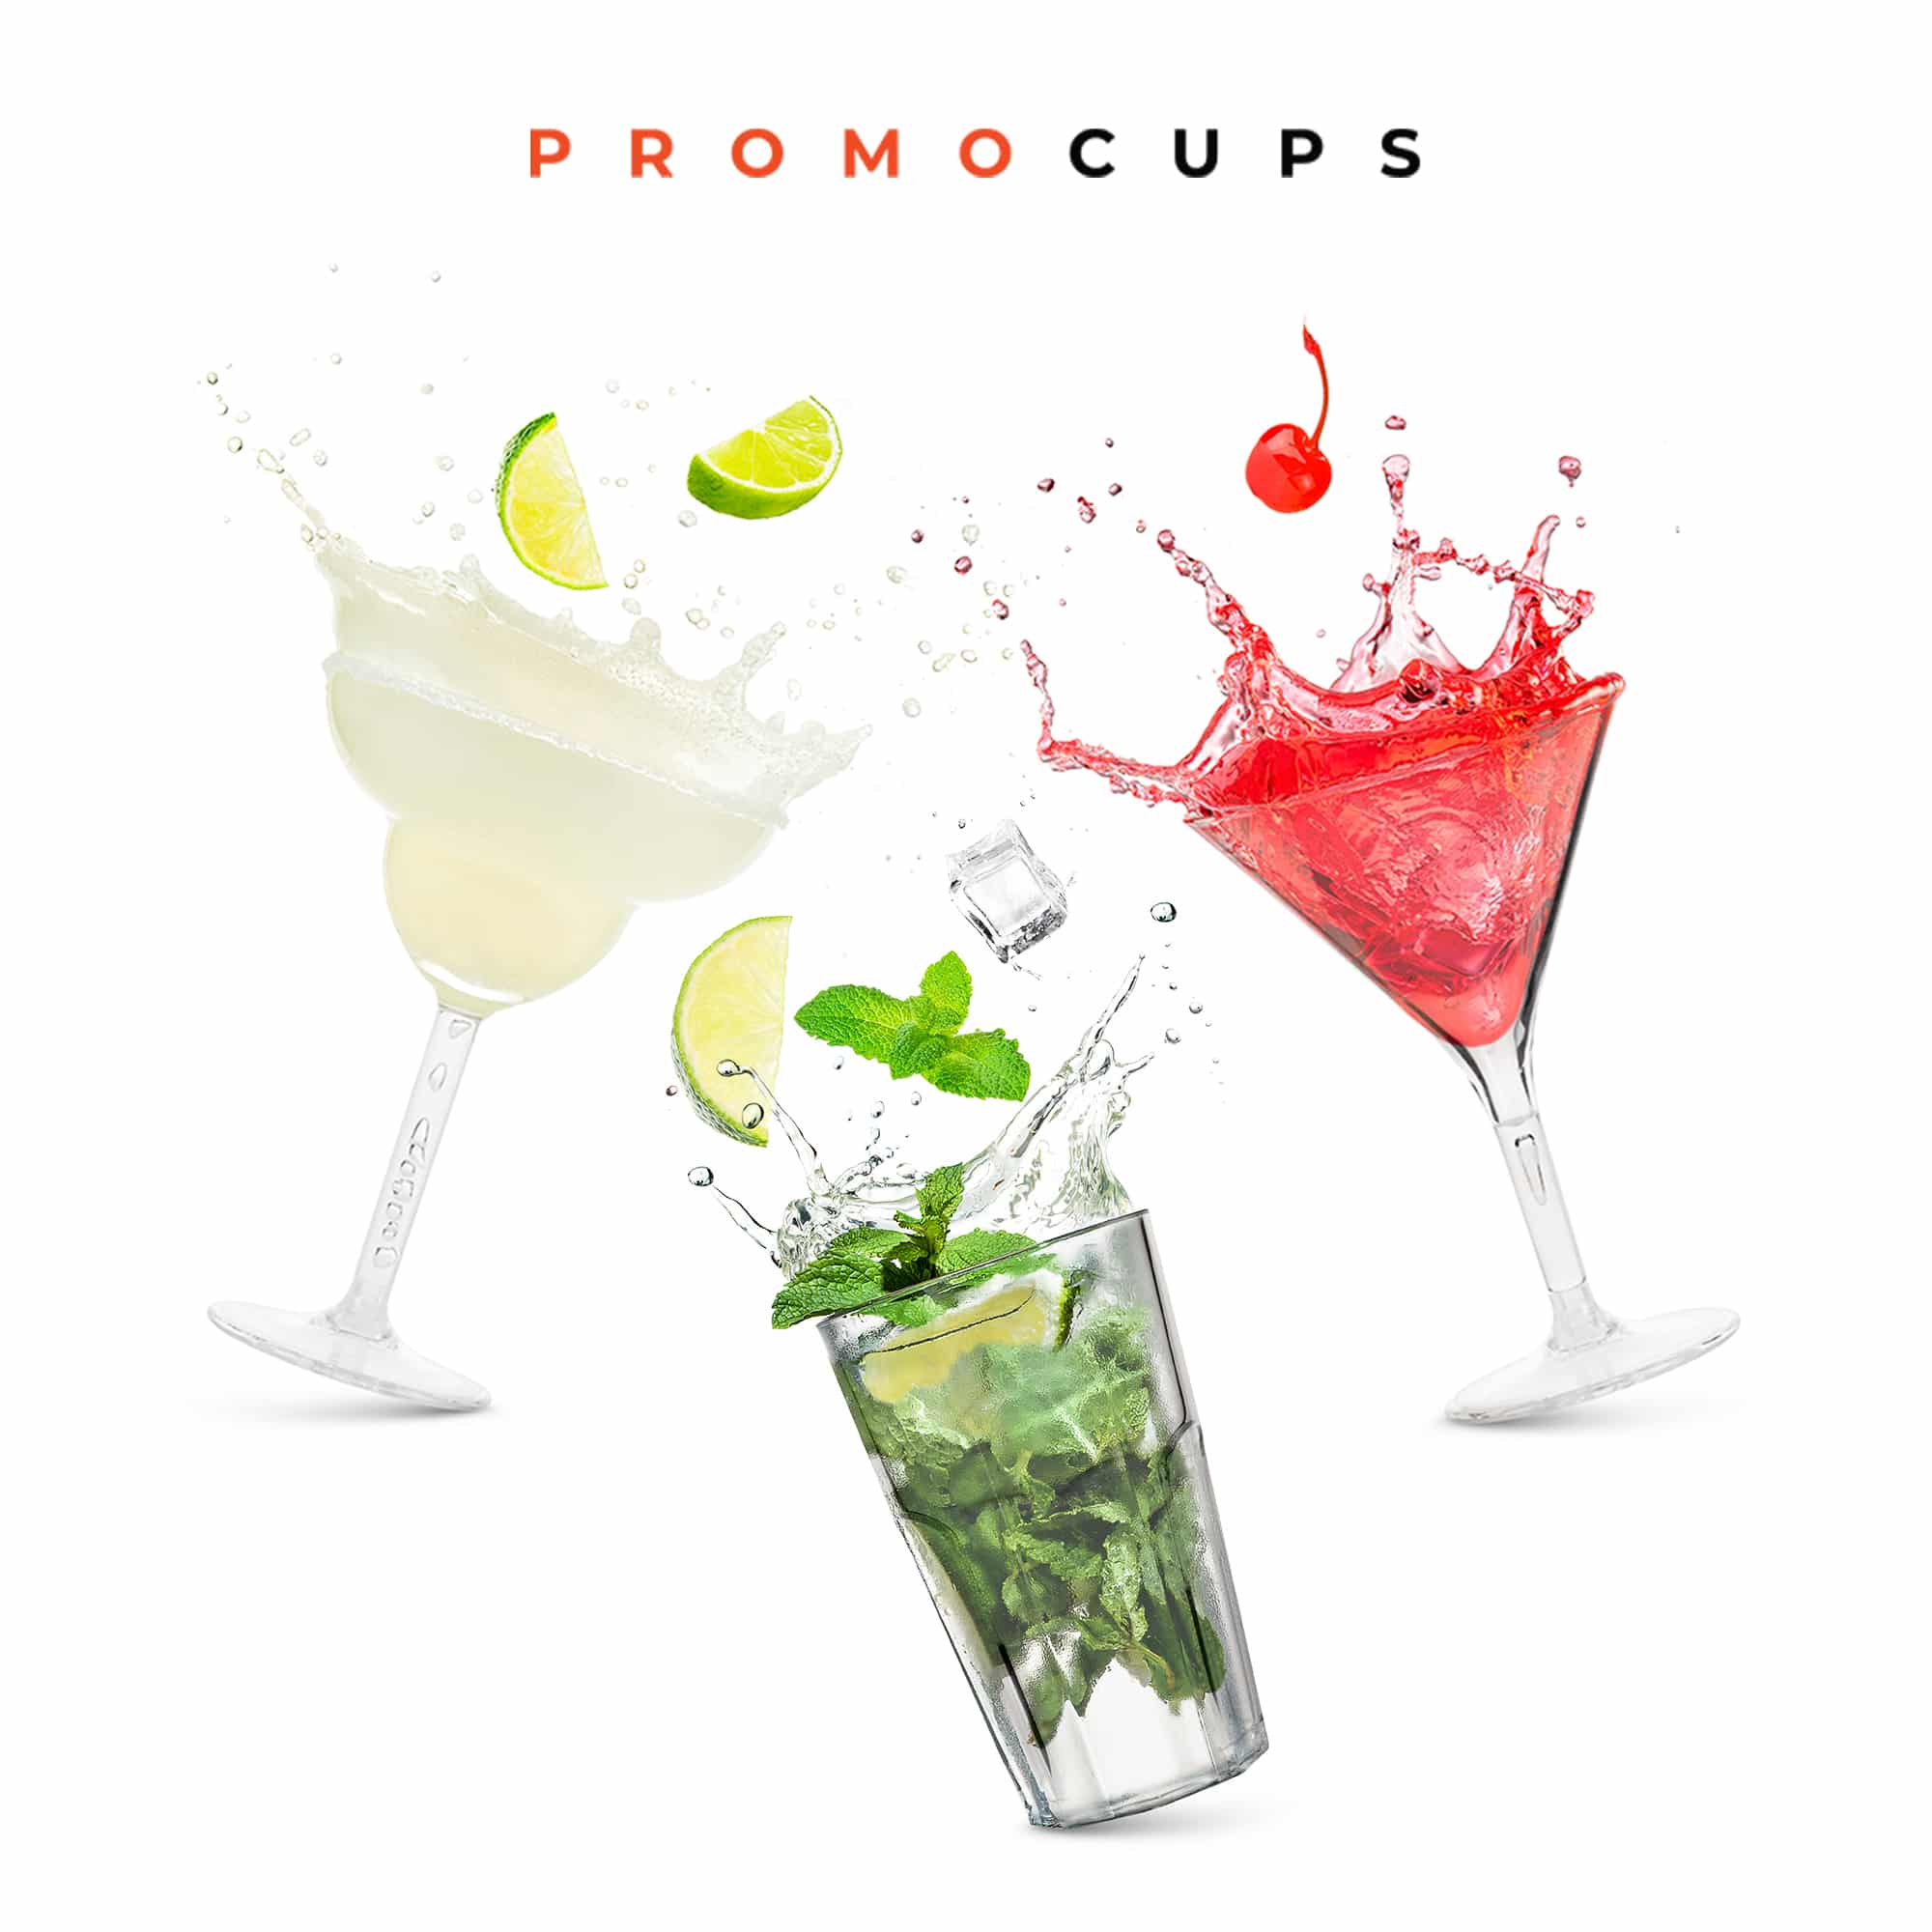 Promocups | De voordelen van polycarbonaat glazen voor outdoor evenementen